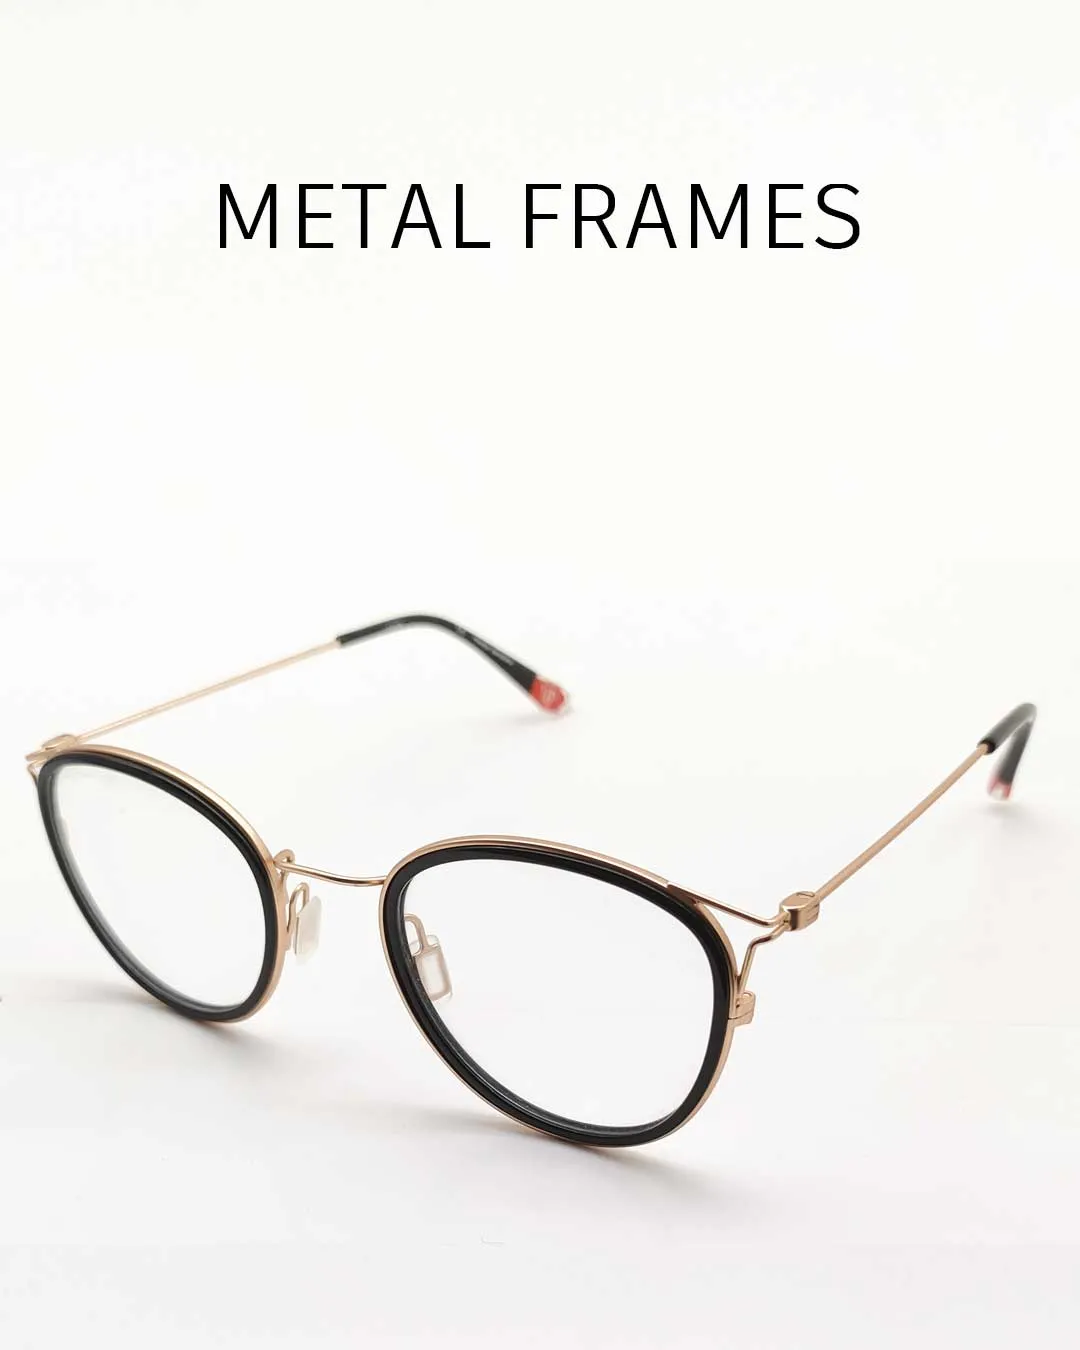 Metal frame supplier